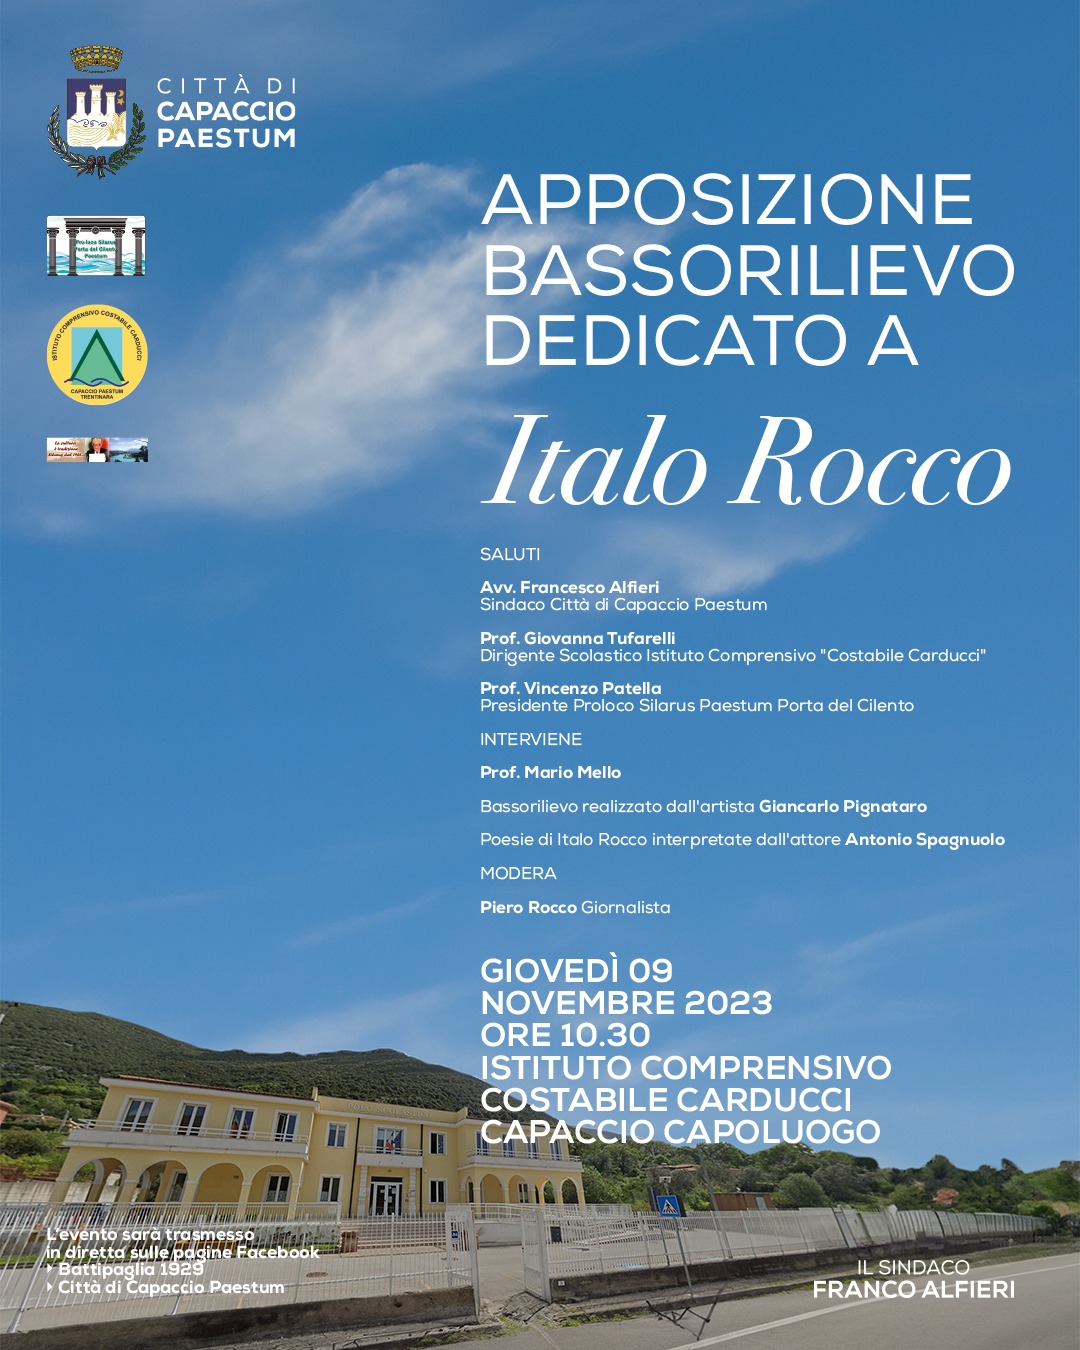 Capaccio Paestum: apposizione bassorilievo a Italo Rocco